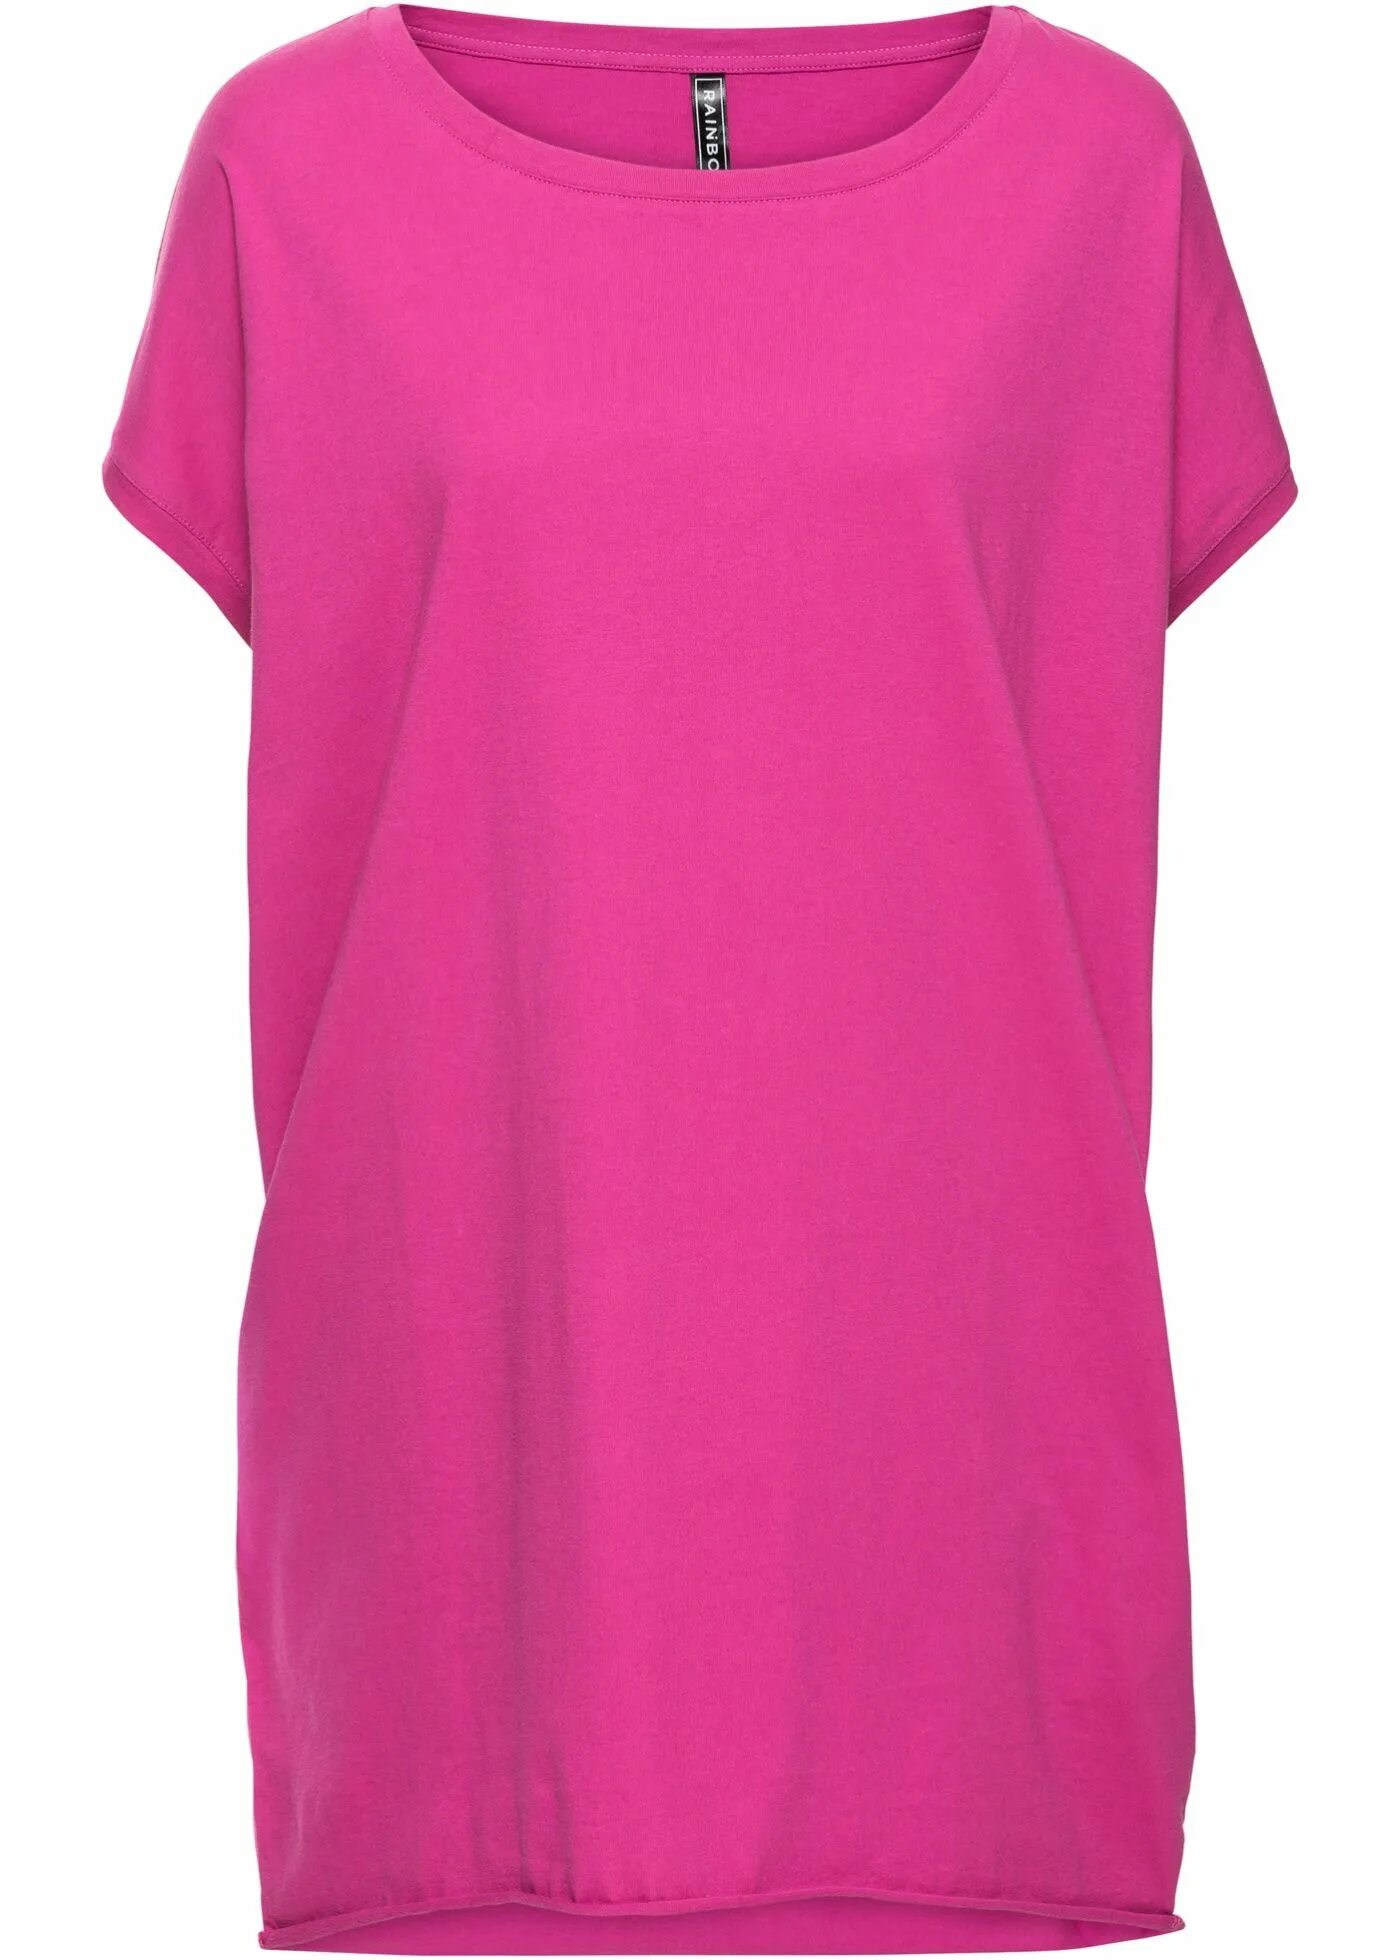 Длинная футболка вайлдберриз. Футболка длинная Бонпри. Bonprix удлиненная футболка. Розовая футболка длинная. Удлиненная футболка женская.